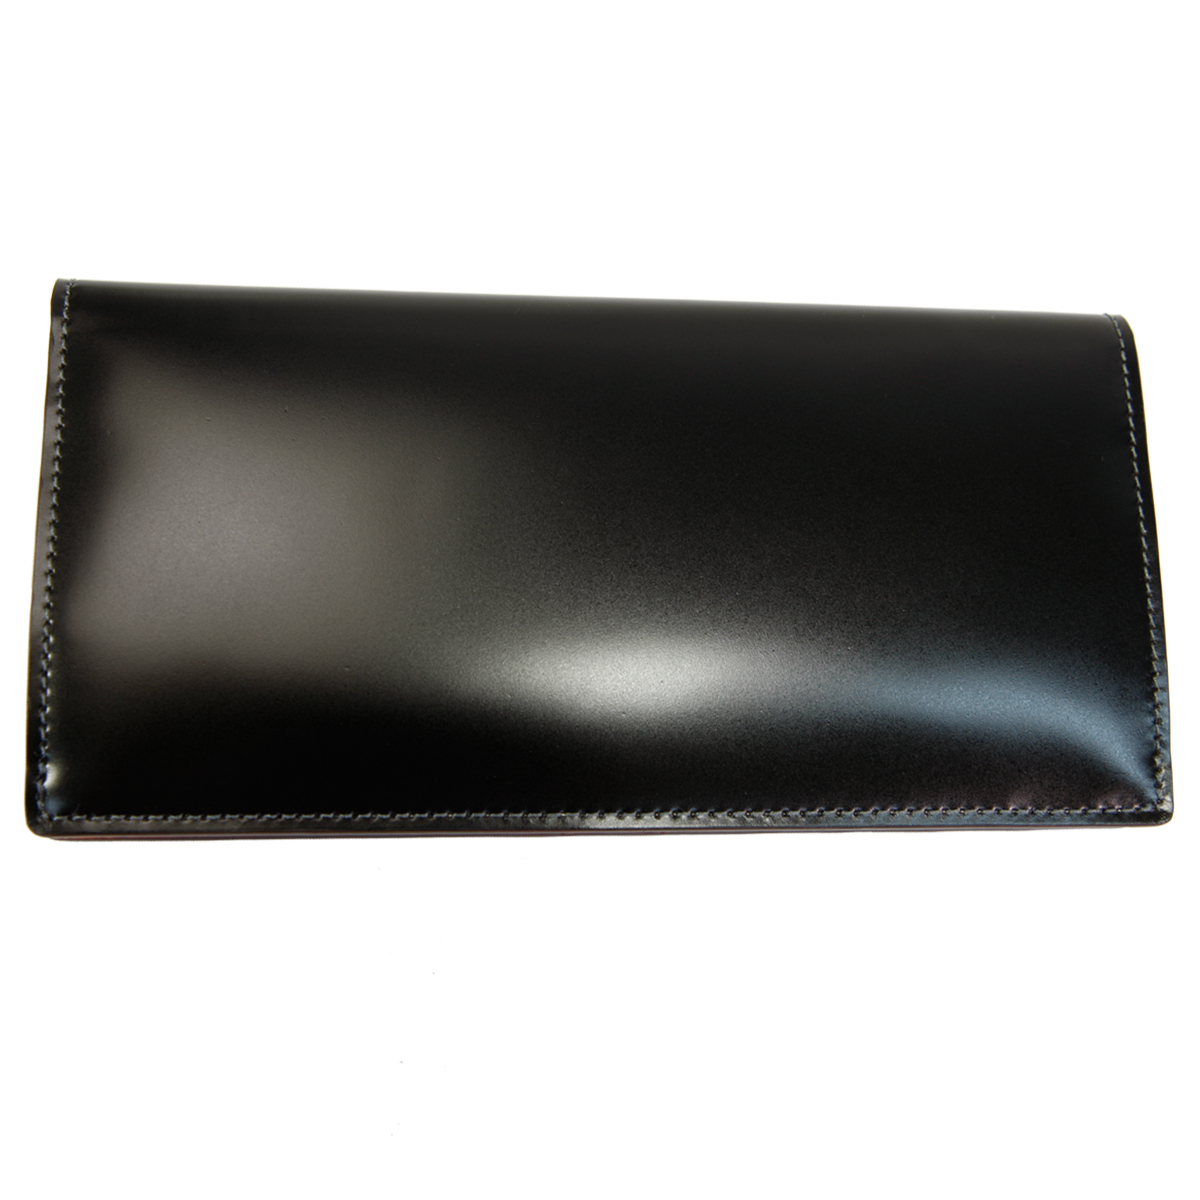 新作人気SALE 財布 cow leather ウォレット二つ折りACT-0010 ZOZOTOWN